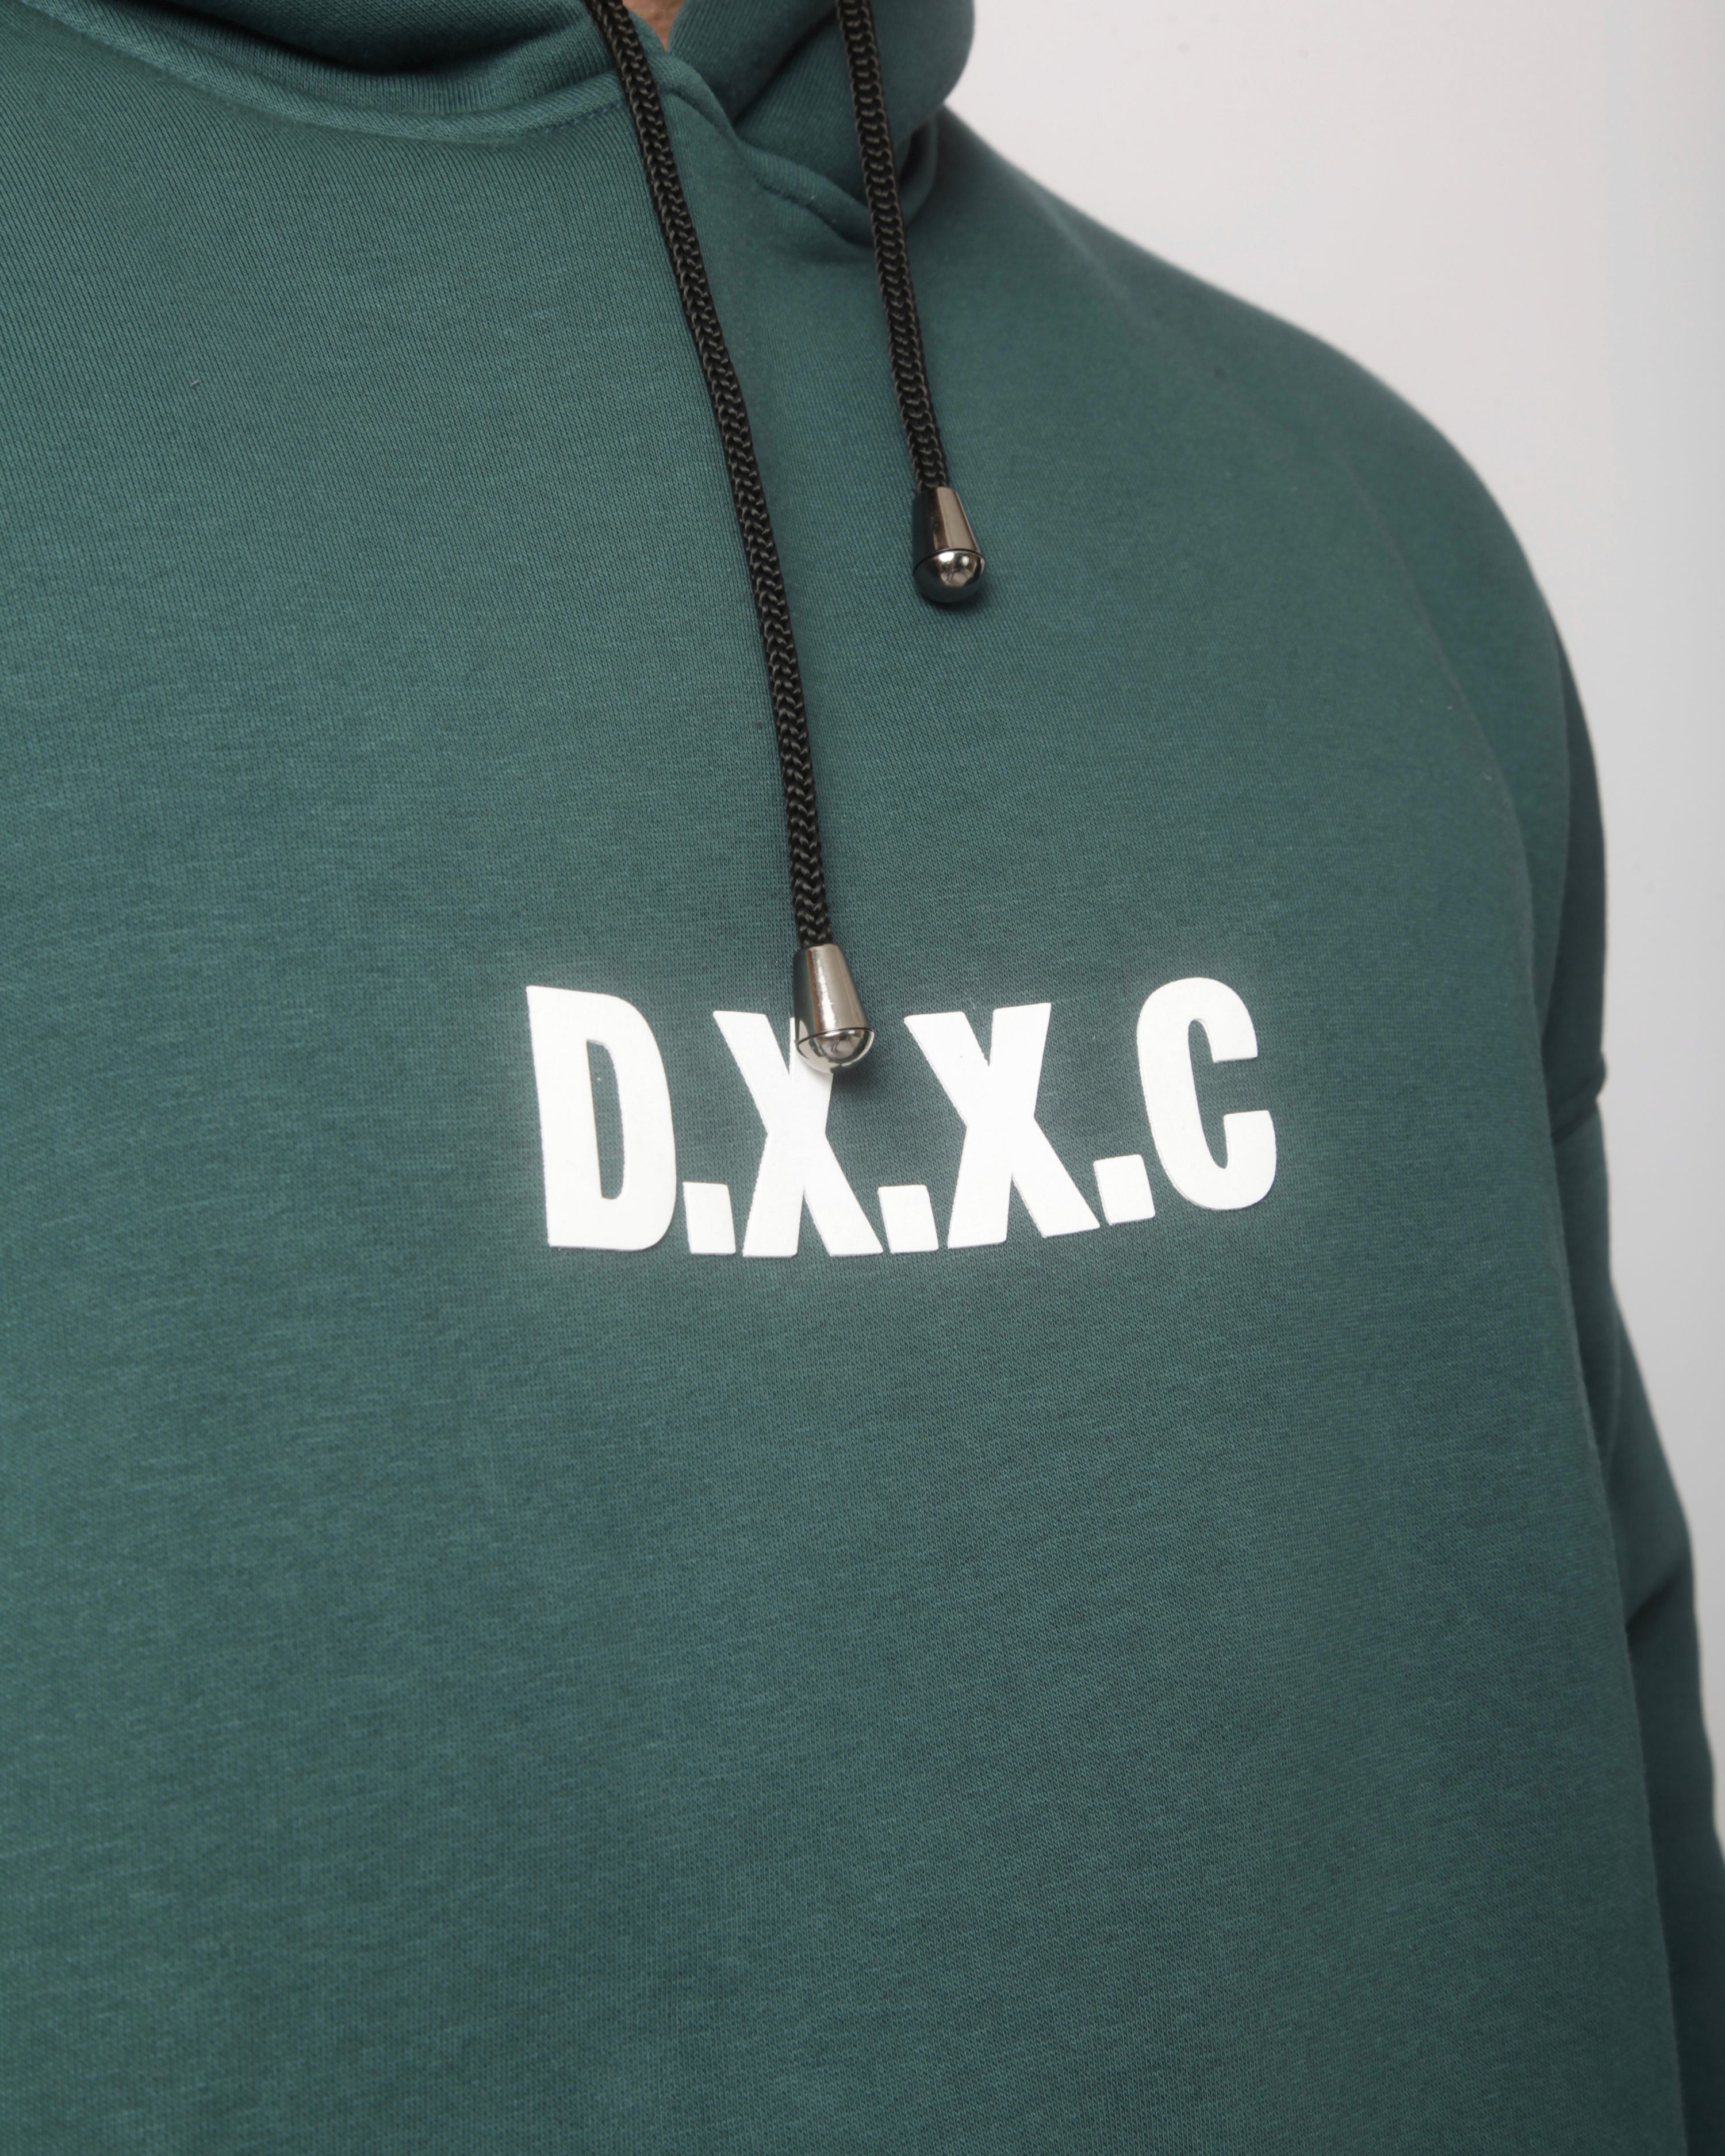 DXXC Hoodie - Dark Teal Green